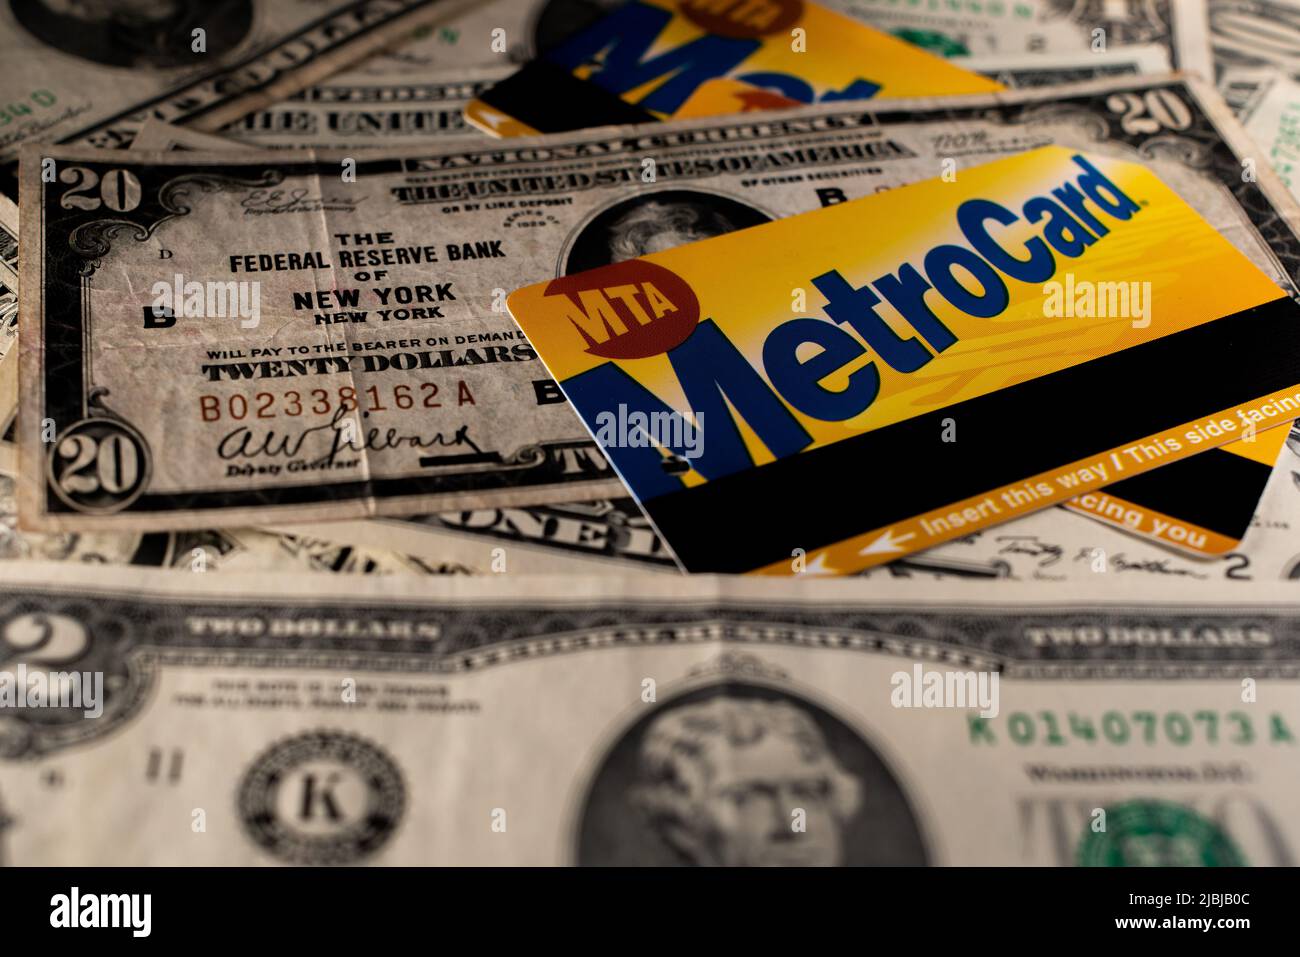 Manhattan, New York/Etats-Unis - 26 mars. 2021: Billet de deux dollars avec carte Metro en arrière-plan. Billet de métro MTA en plus de l'argent liquide étalé. Banque D'Images